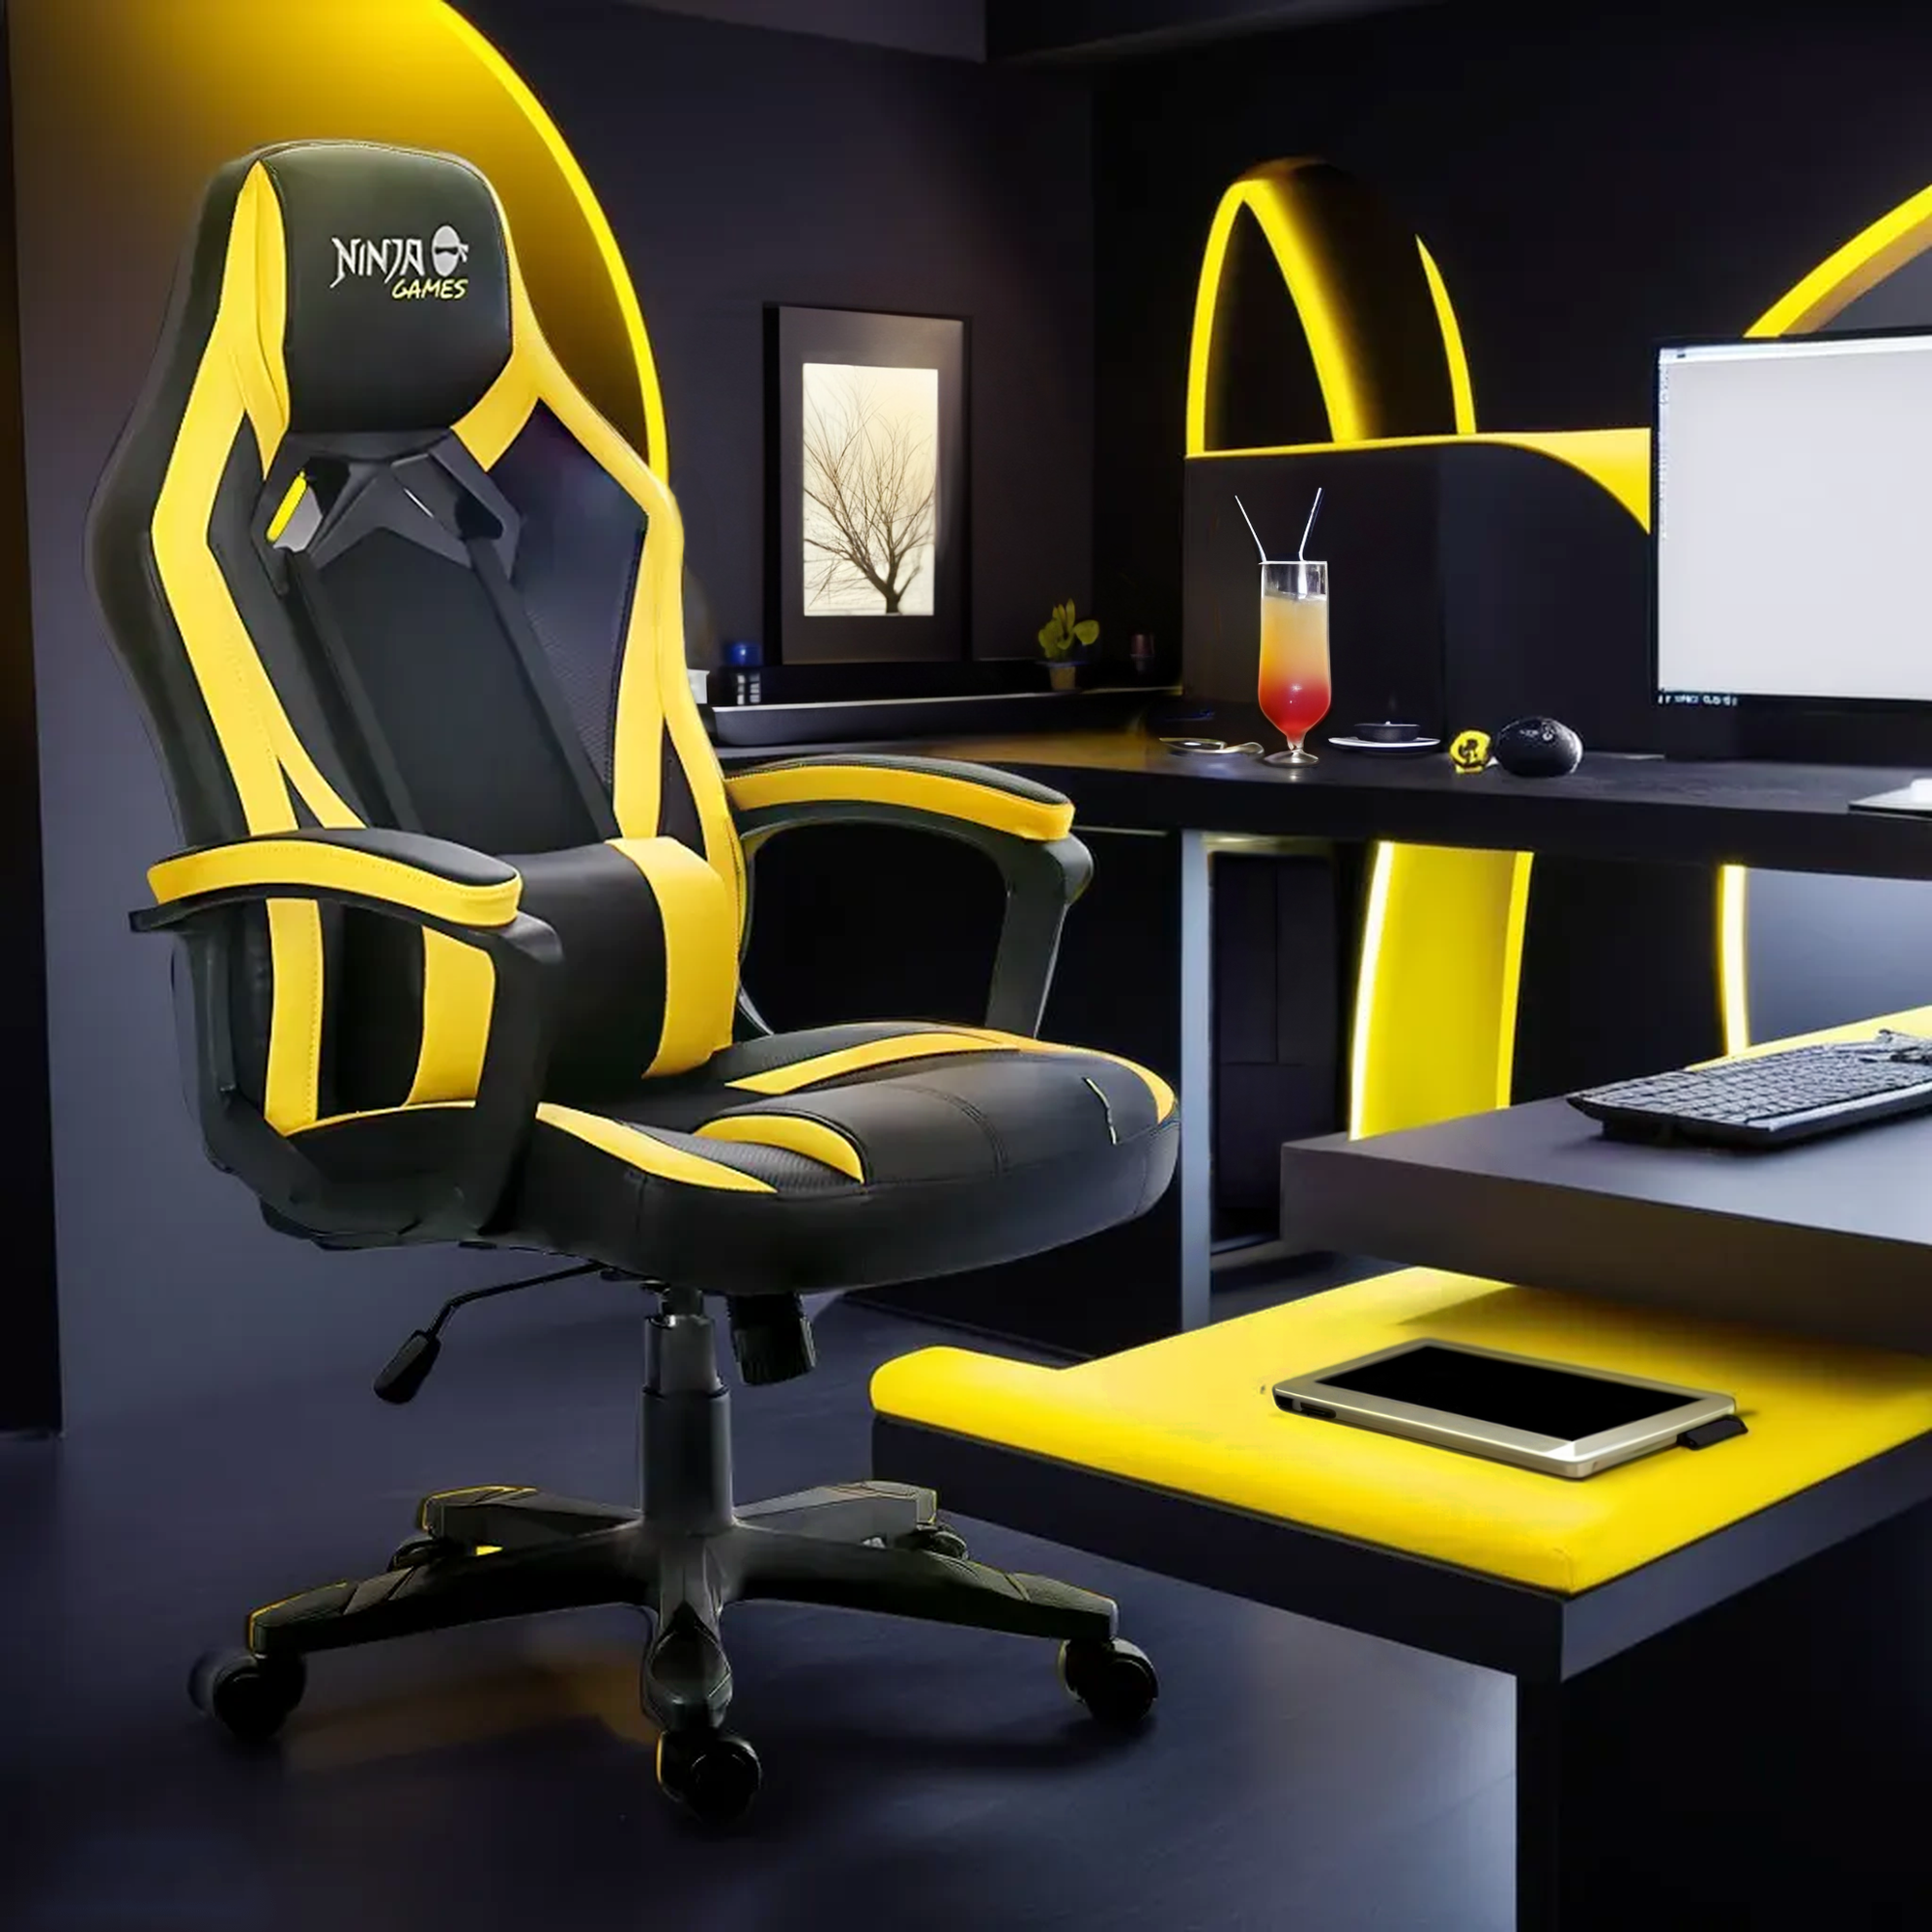 Кресло игровое COMIRON GAME-16 Ninja Черно-желтый